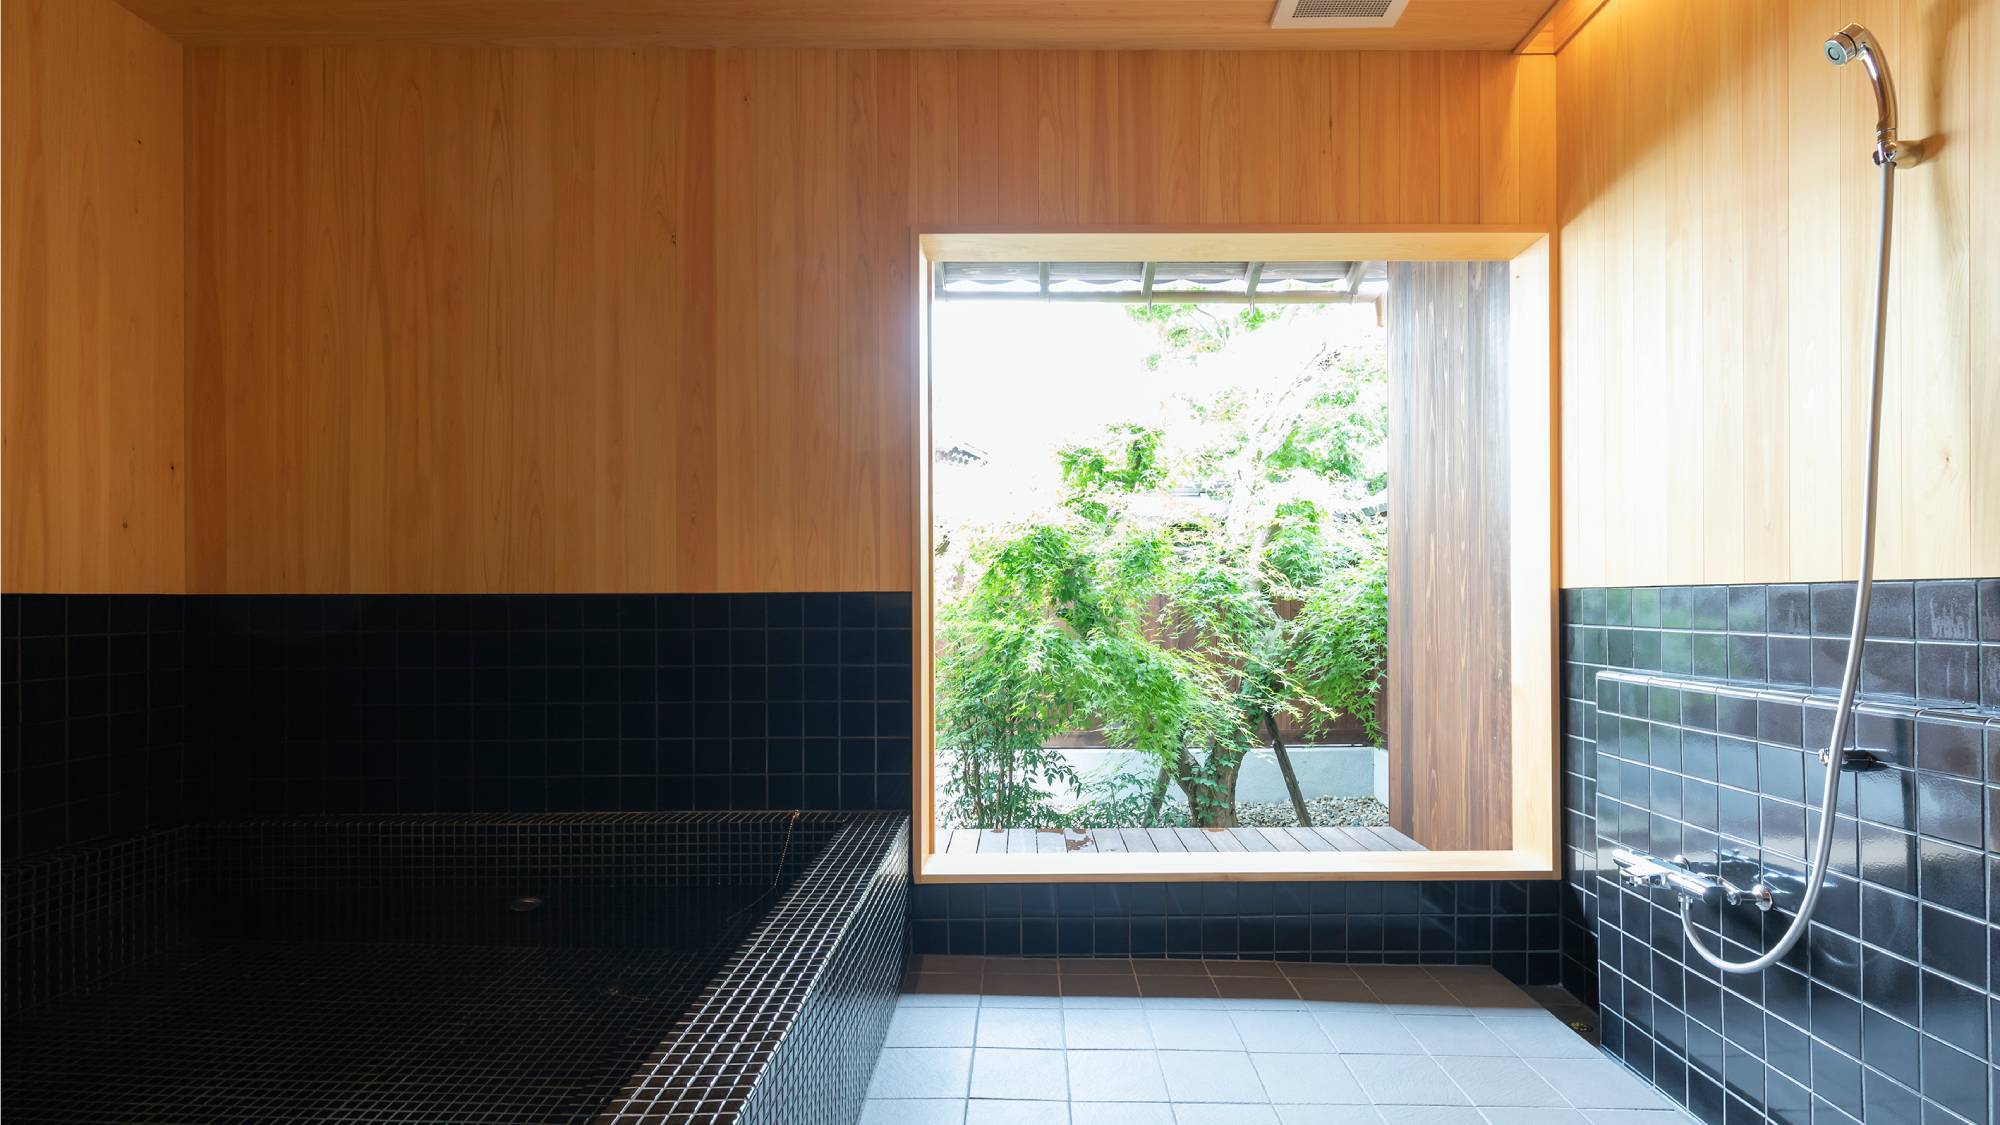 【外村宇兵衛邸】タイル張りの大きな浴槽が特徴的な大浴場。